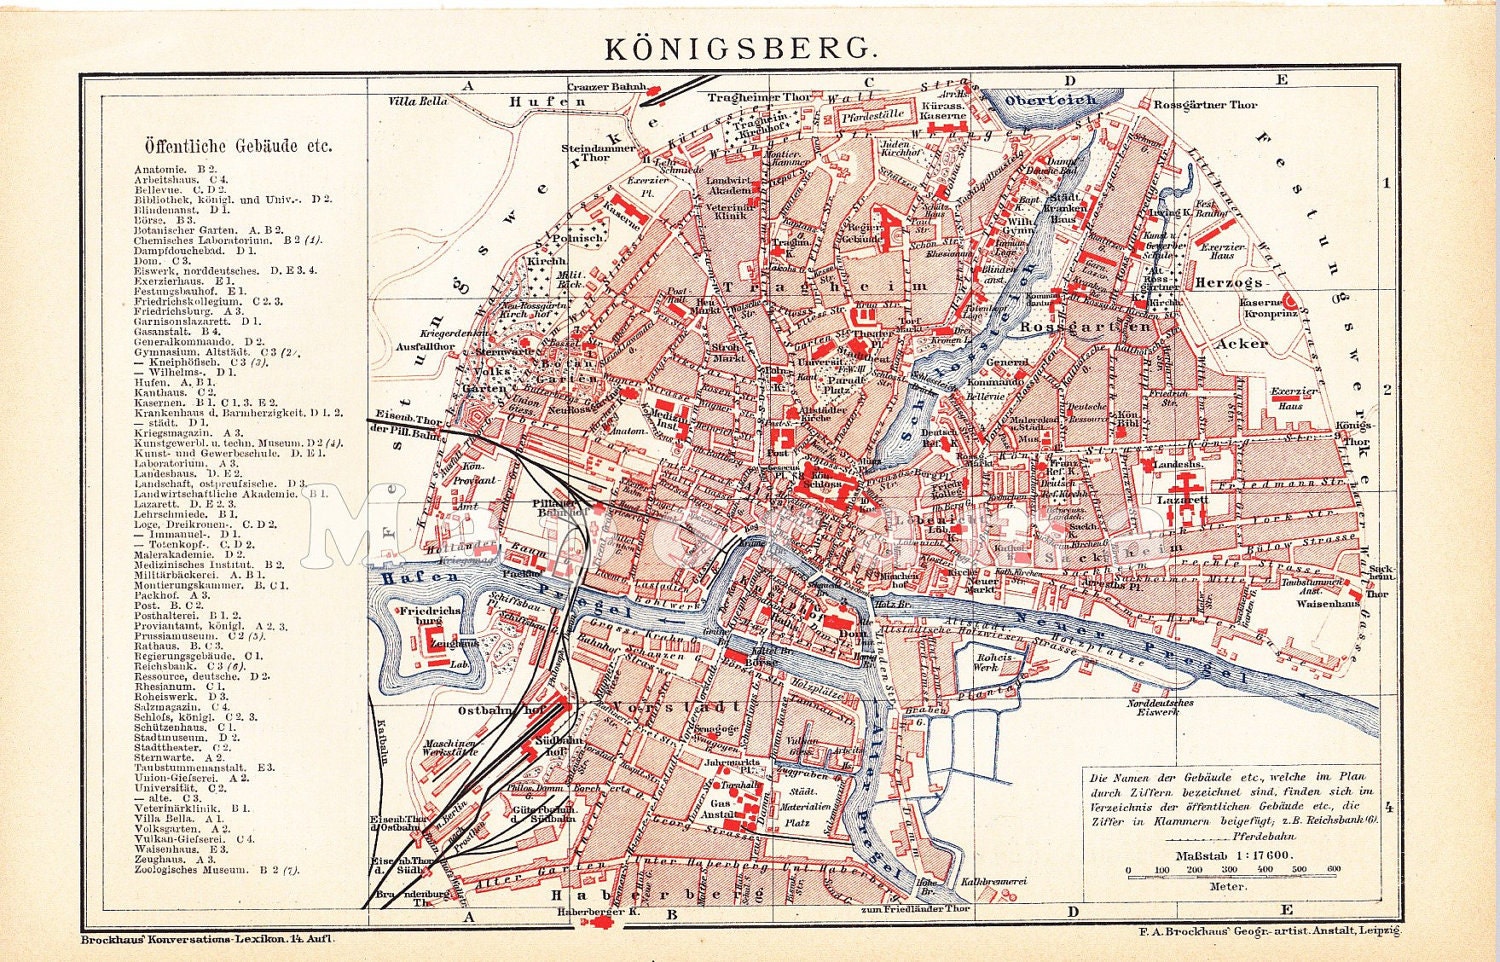 Подпишите на карте город кенигсберг. Карта Кенигсберга 1939 года. Карта Кёнигсберга 1940. Кёнигсберг на карте 18 века. Кенигсберг Восточная Пруссия 18 век.